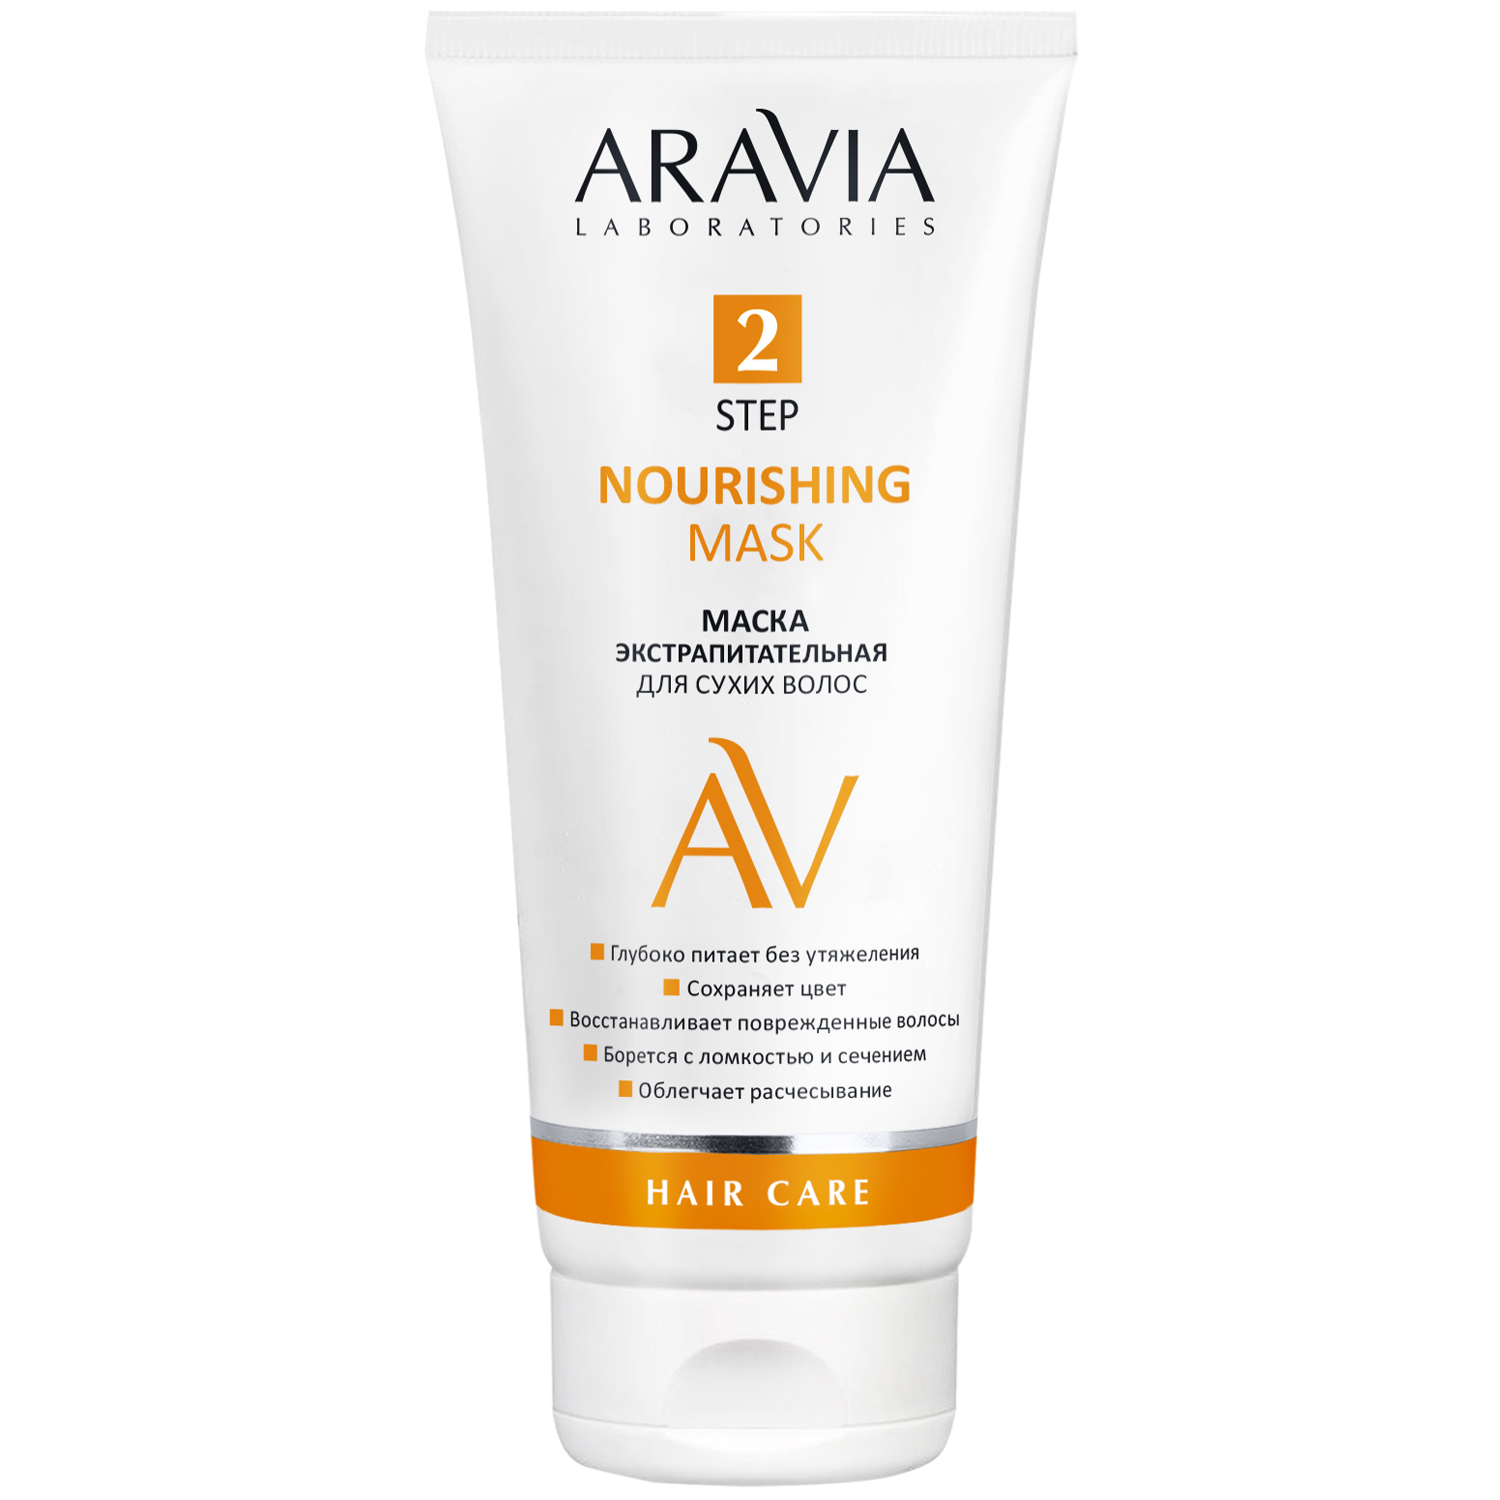 Aravia Laboratories Маска экстрапитательная для сухих волос Nourishing Mask, 200 мл (Aravia Laboratories, Уход за волосами) маска для интенсивного питания сухих поврежденных и окрашенных волос lerato cosmetic nourishing mask 300 мл